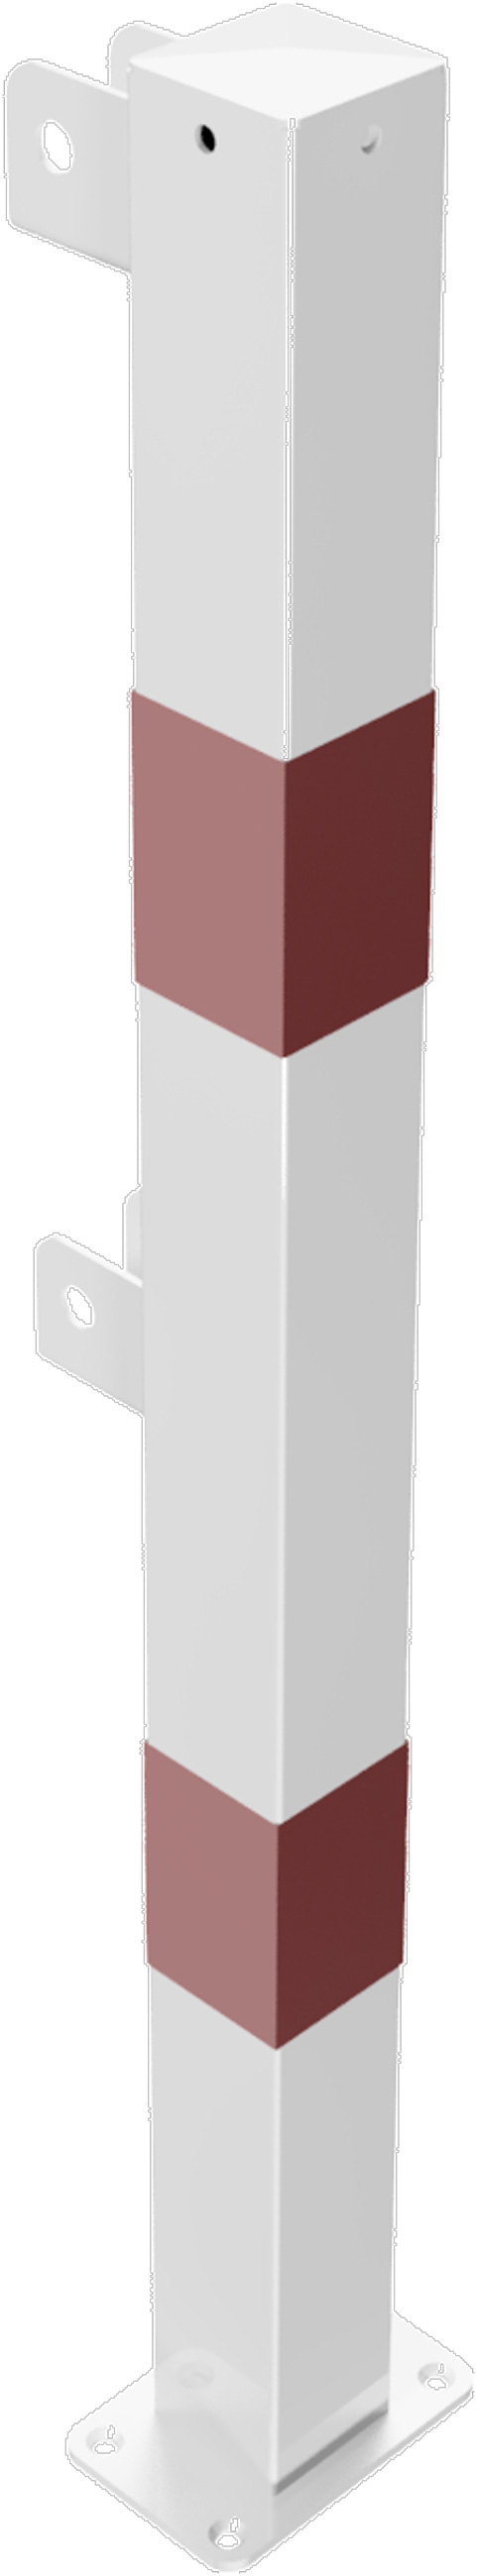 Schake Schutzgeländer Stahl Endpfosten OD 70 x 70 mm weiß | rot